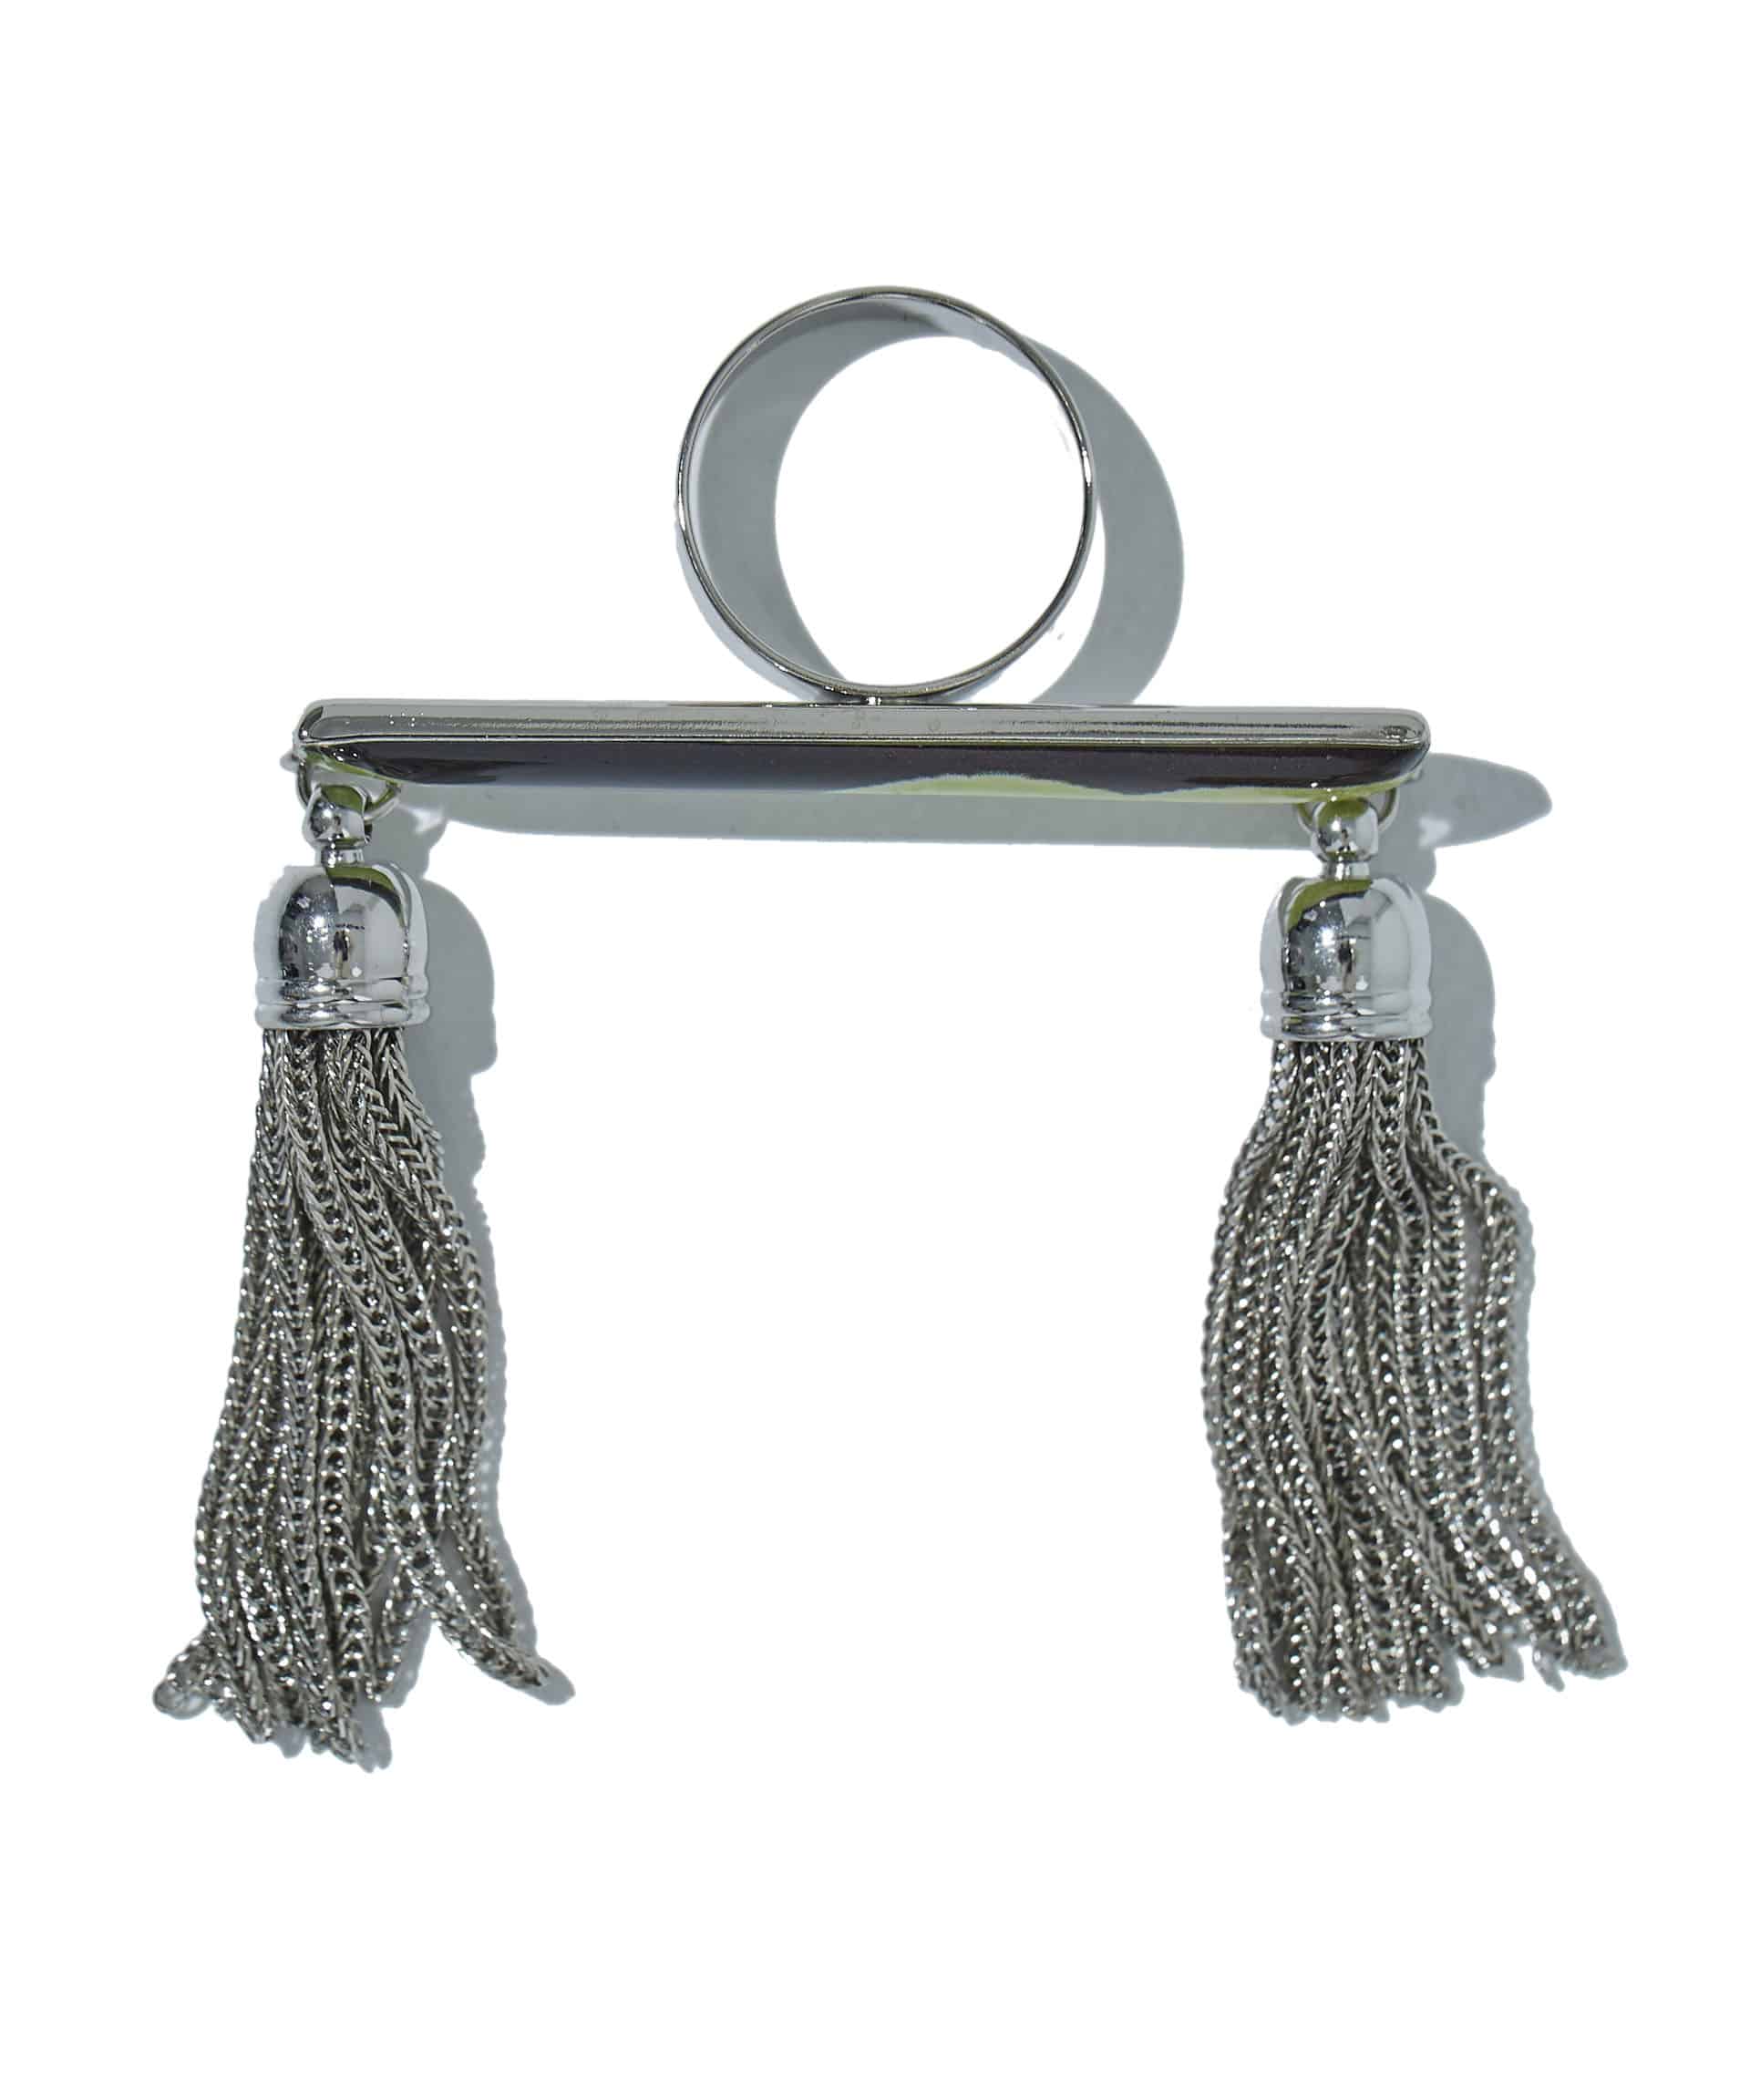 Fringe scarf ring